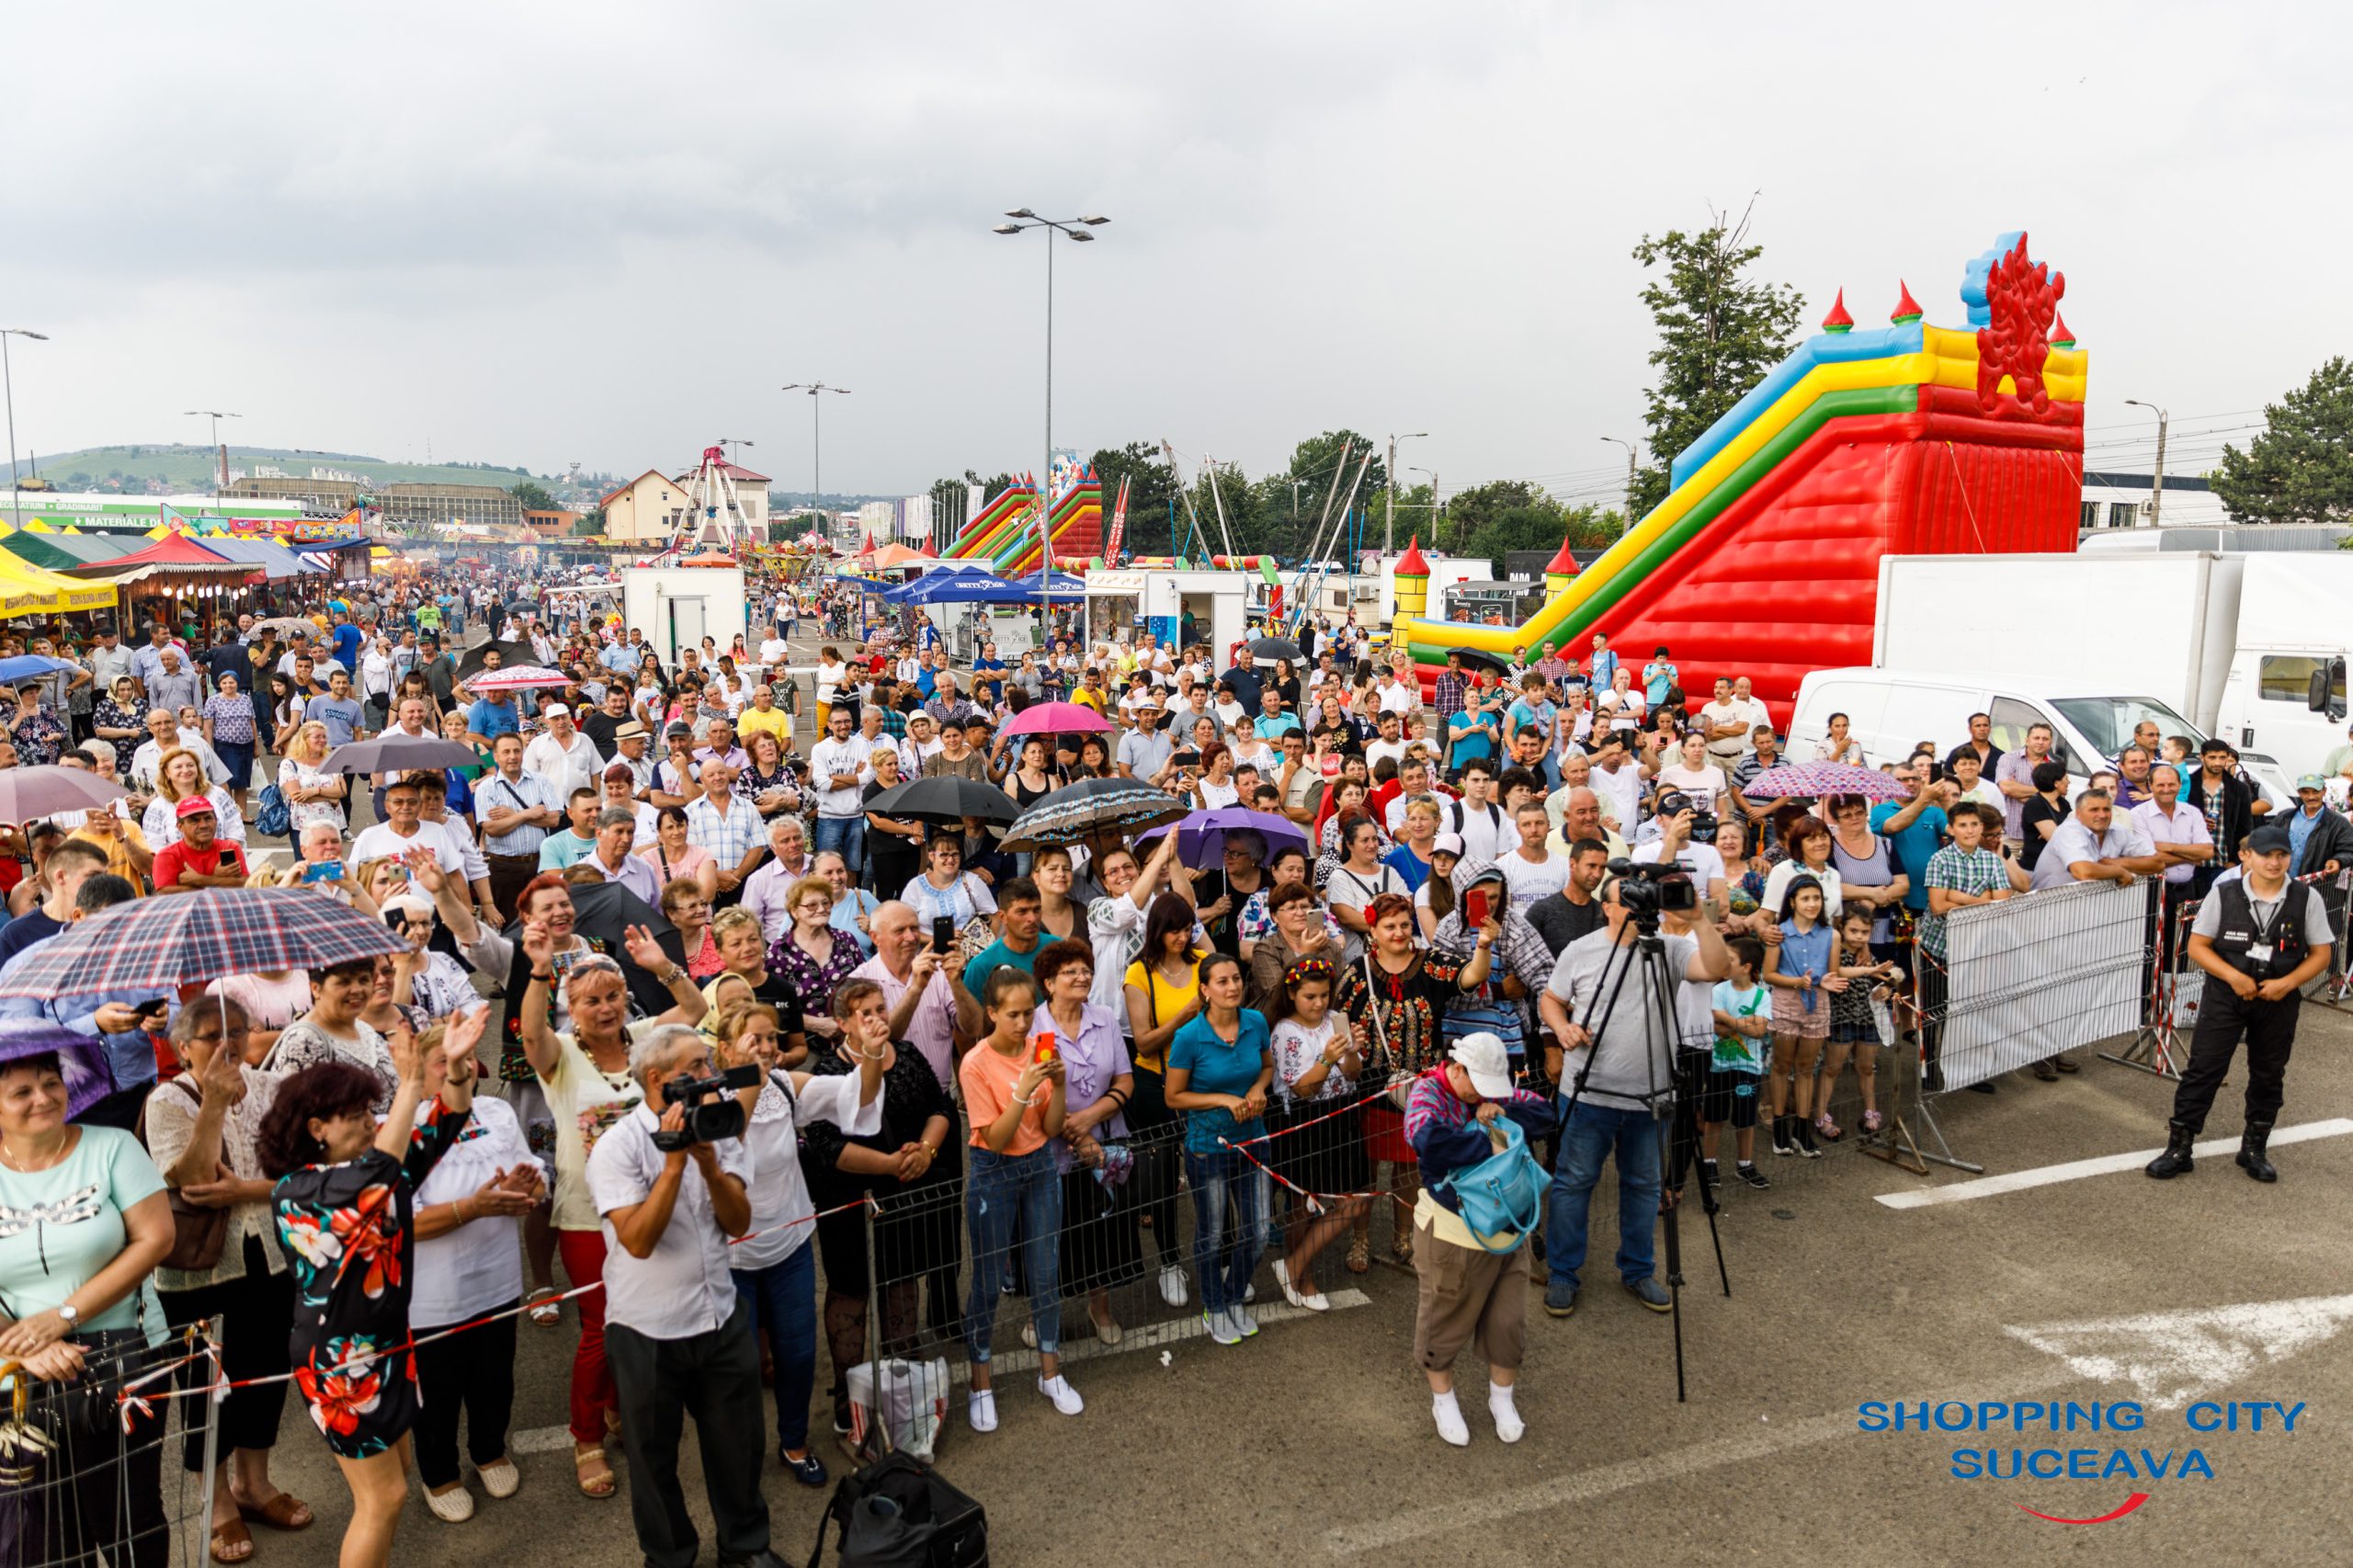 Festivalul verii 2019, în parcarea Shopping City Suceava